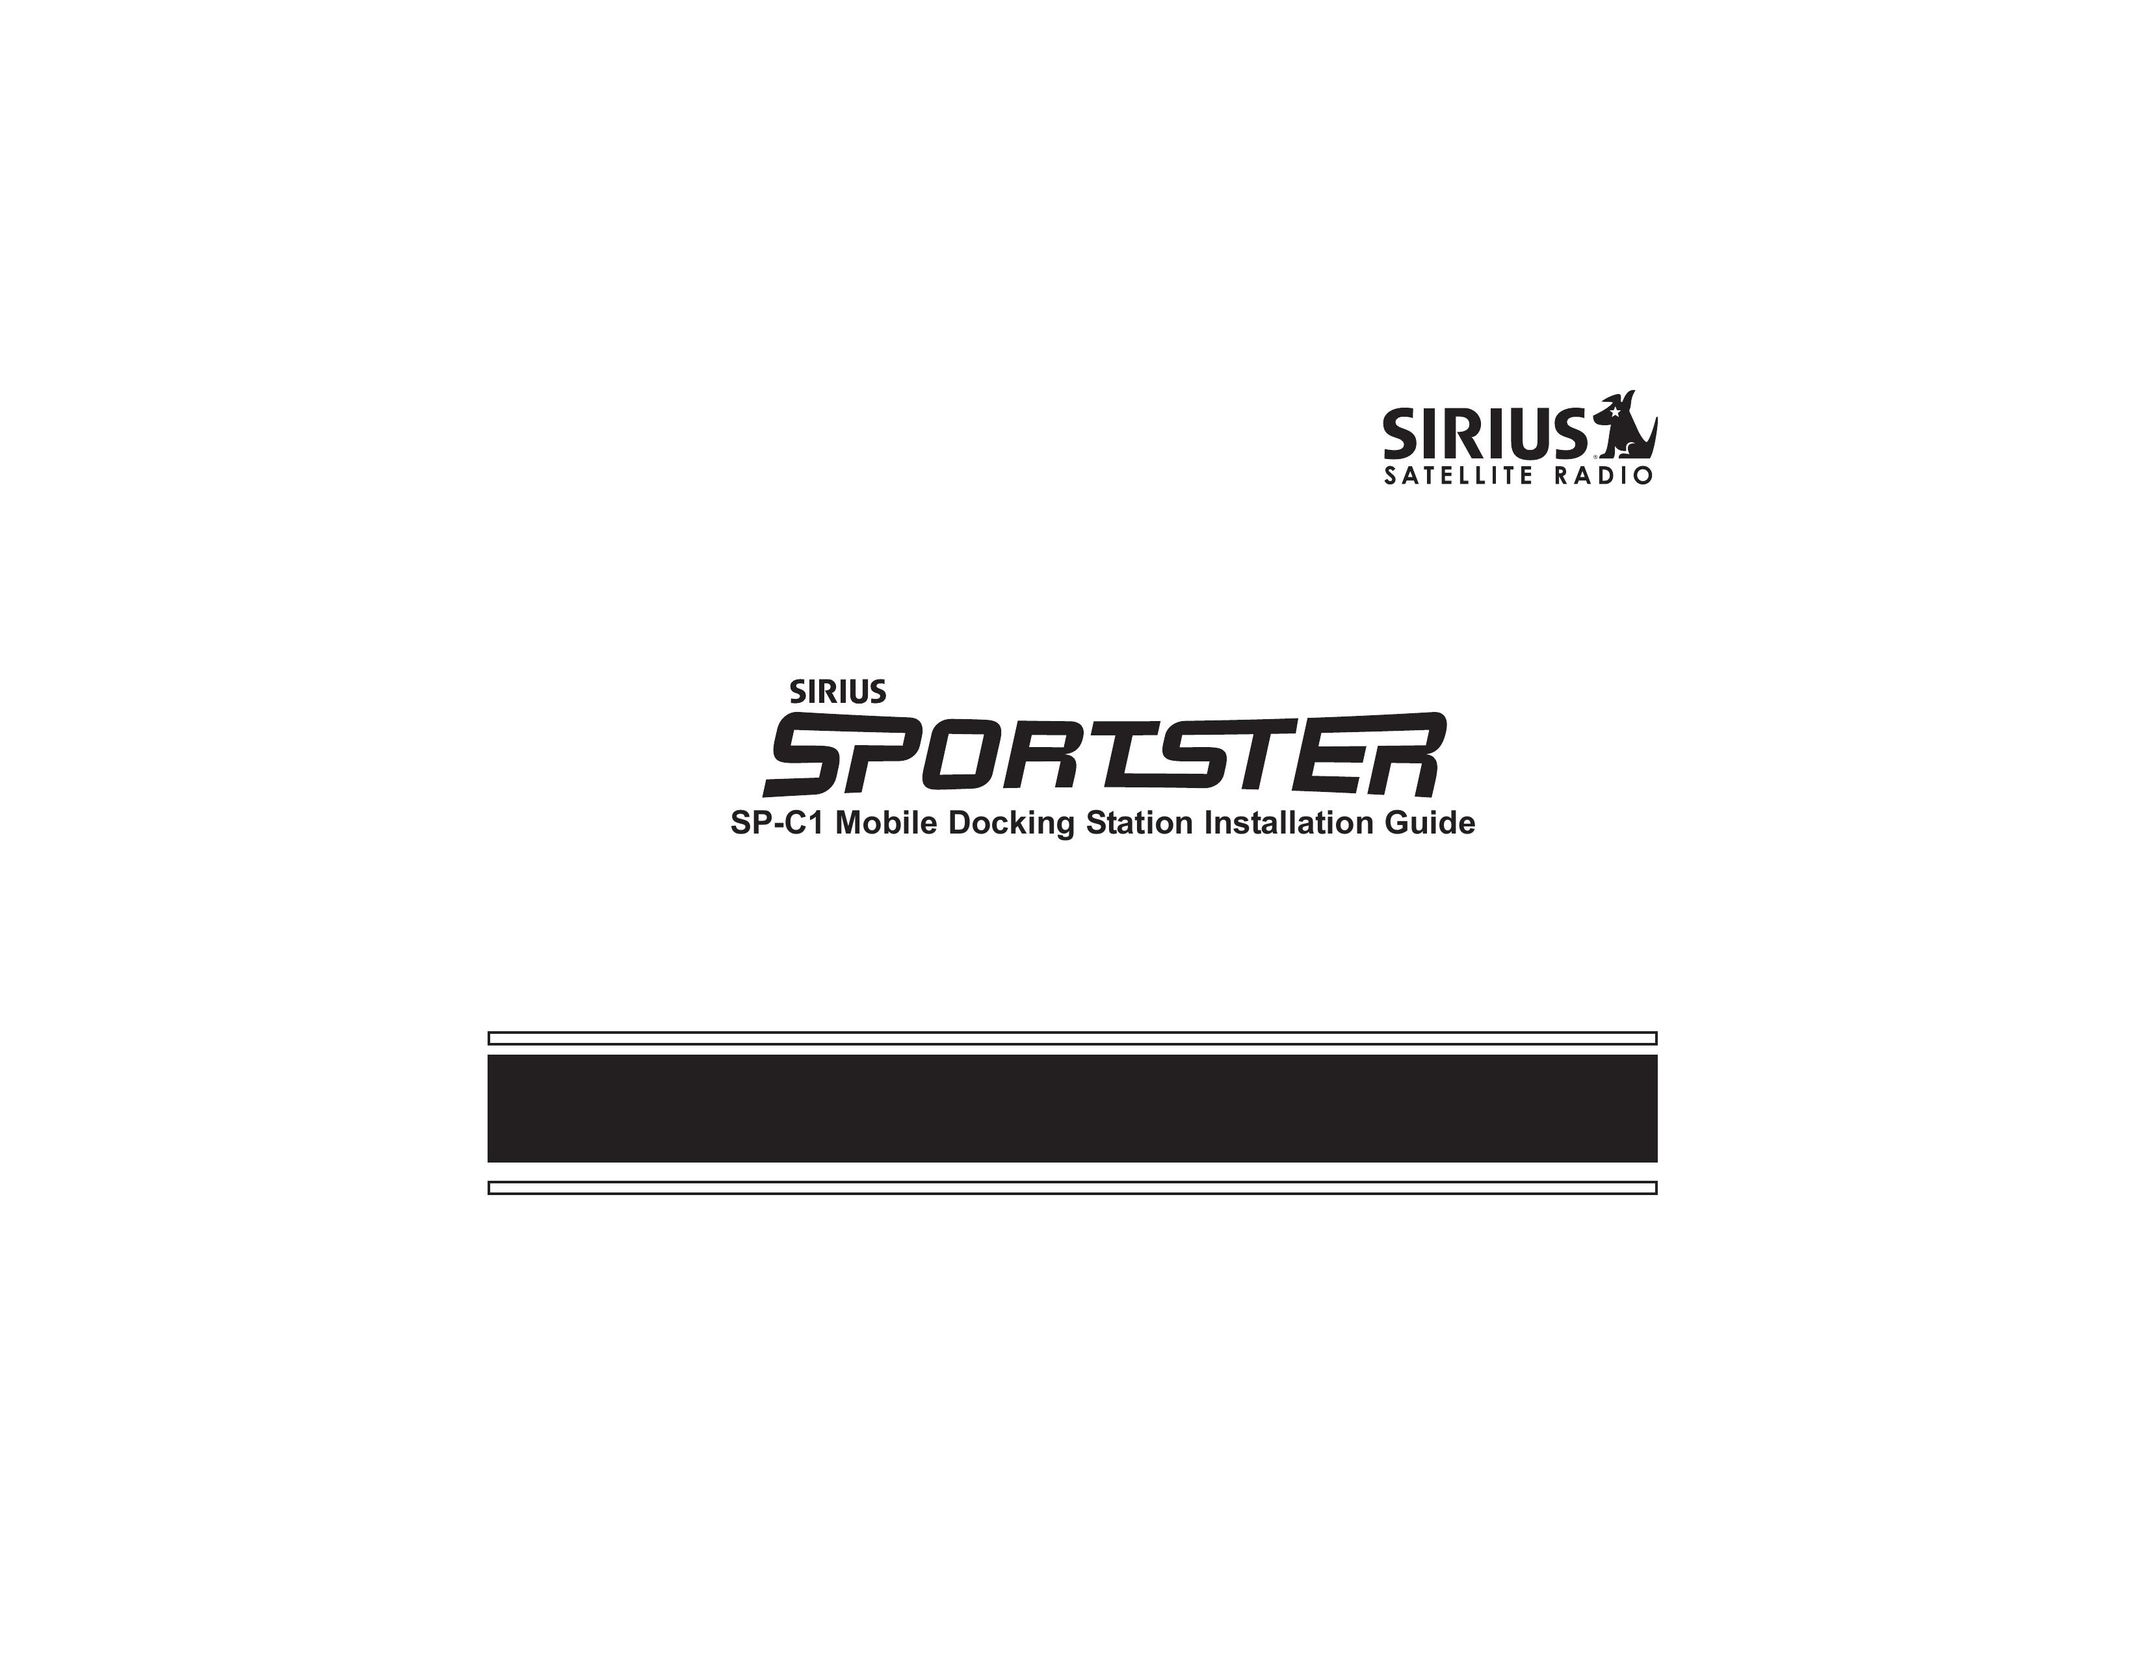 Sirius Satellite Radio SP-C1 MP3 Docking Station User Manual